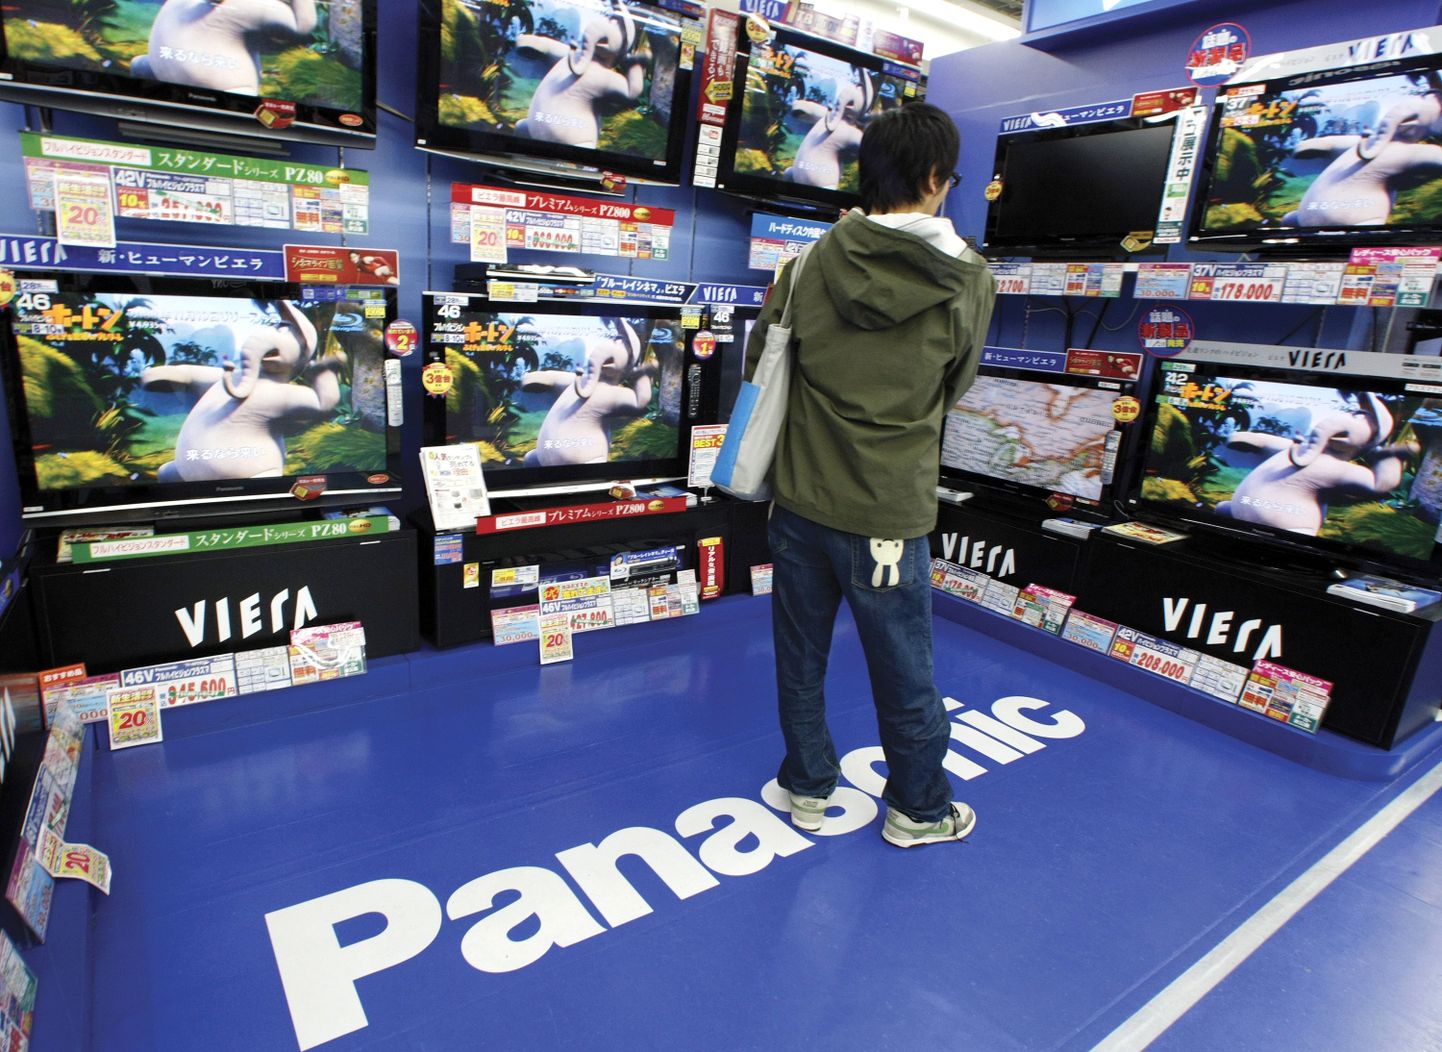 Panasonicu telerite väljapanek Tokyo elektroonikakaupluses.